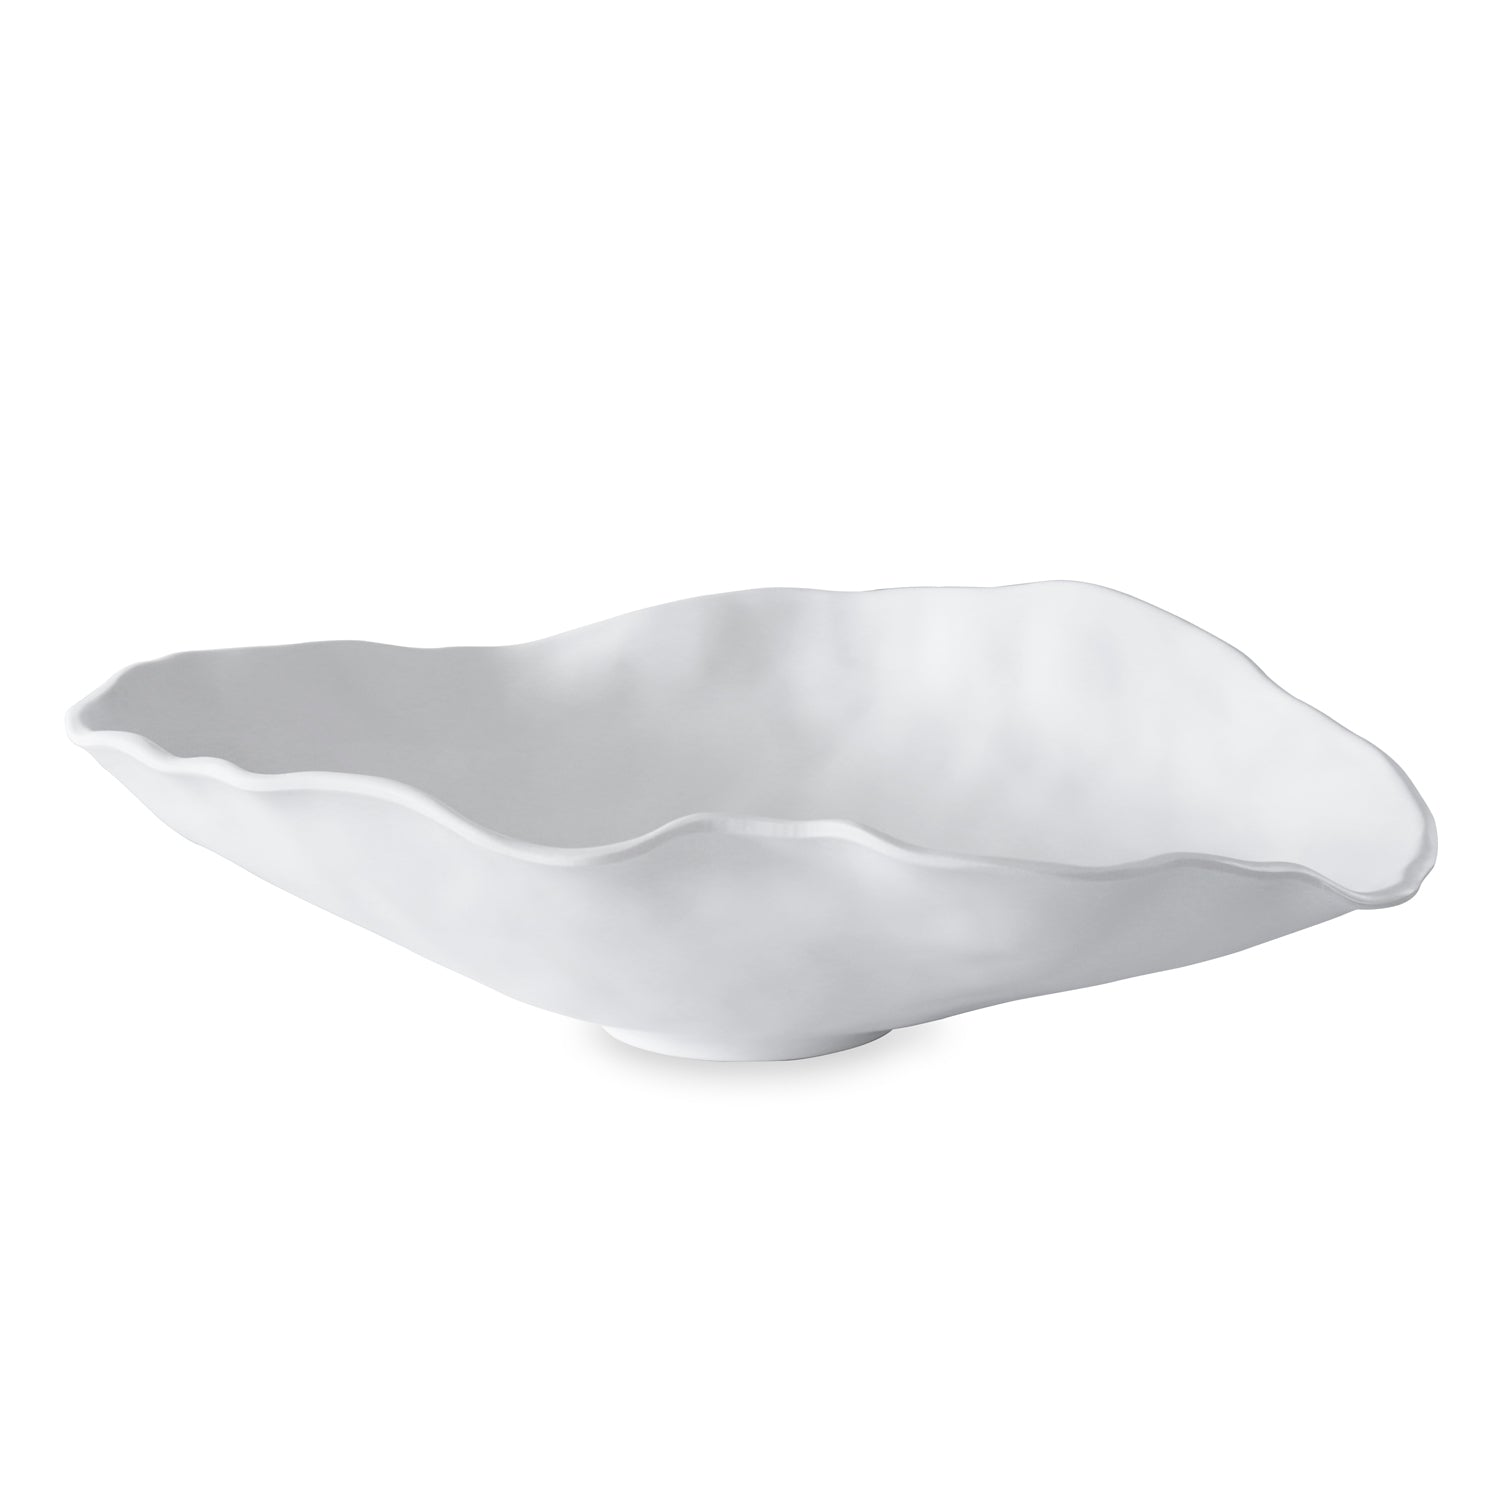 VIDA Nube Large Oval Bowl (White)